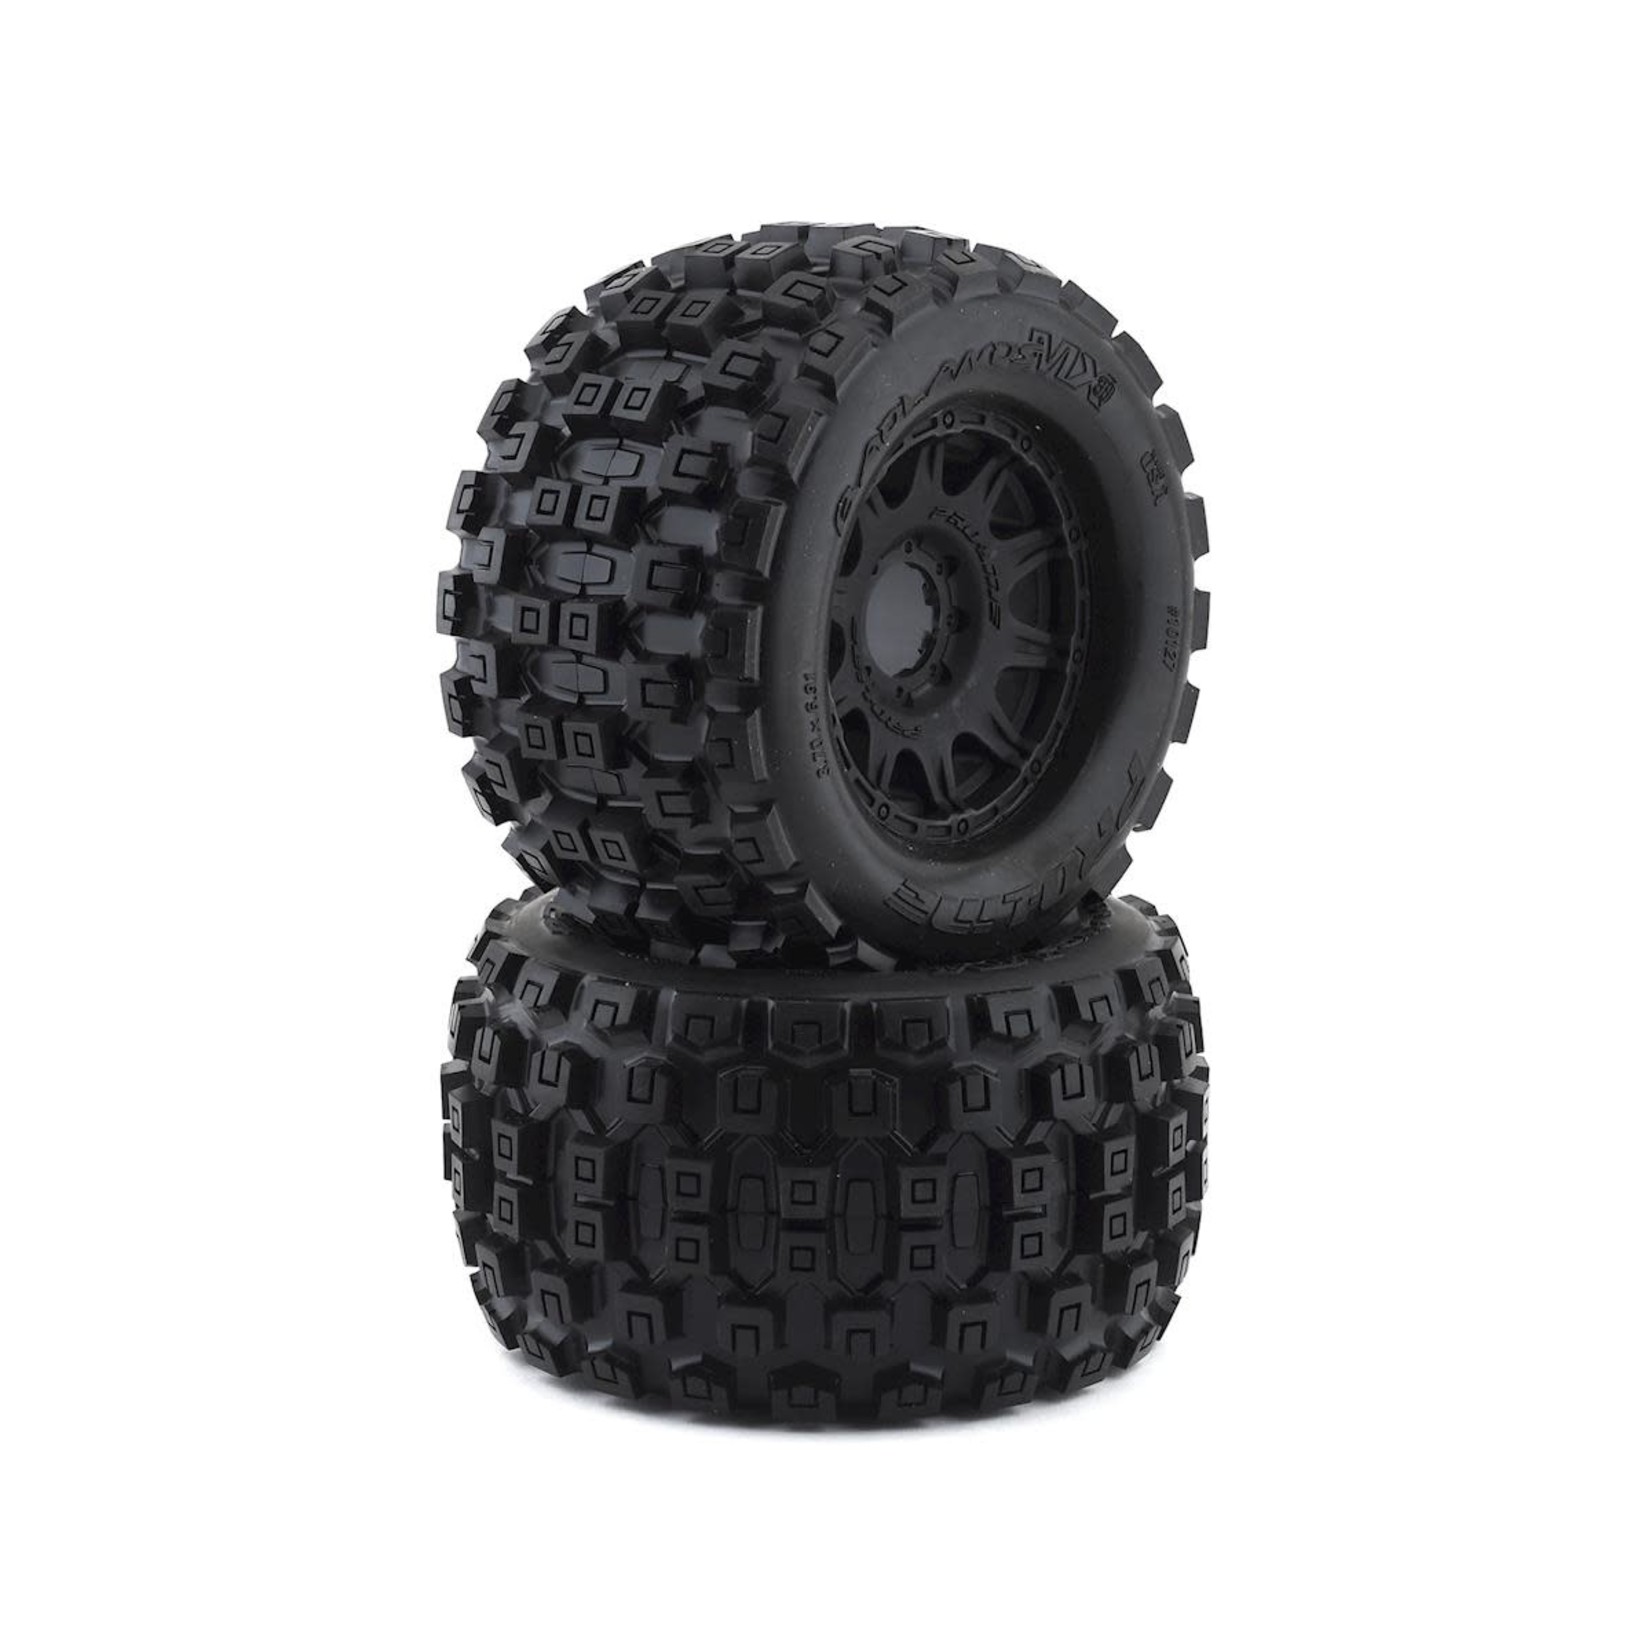 Pro-Line Pro-Line Badlands MX38 3.8" Tire w/Raid 8x32 Wheels (Black) (2) (M2) w/Removable Hex #10127-10